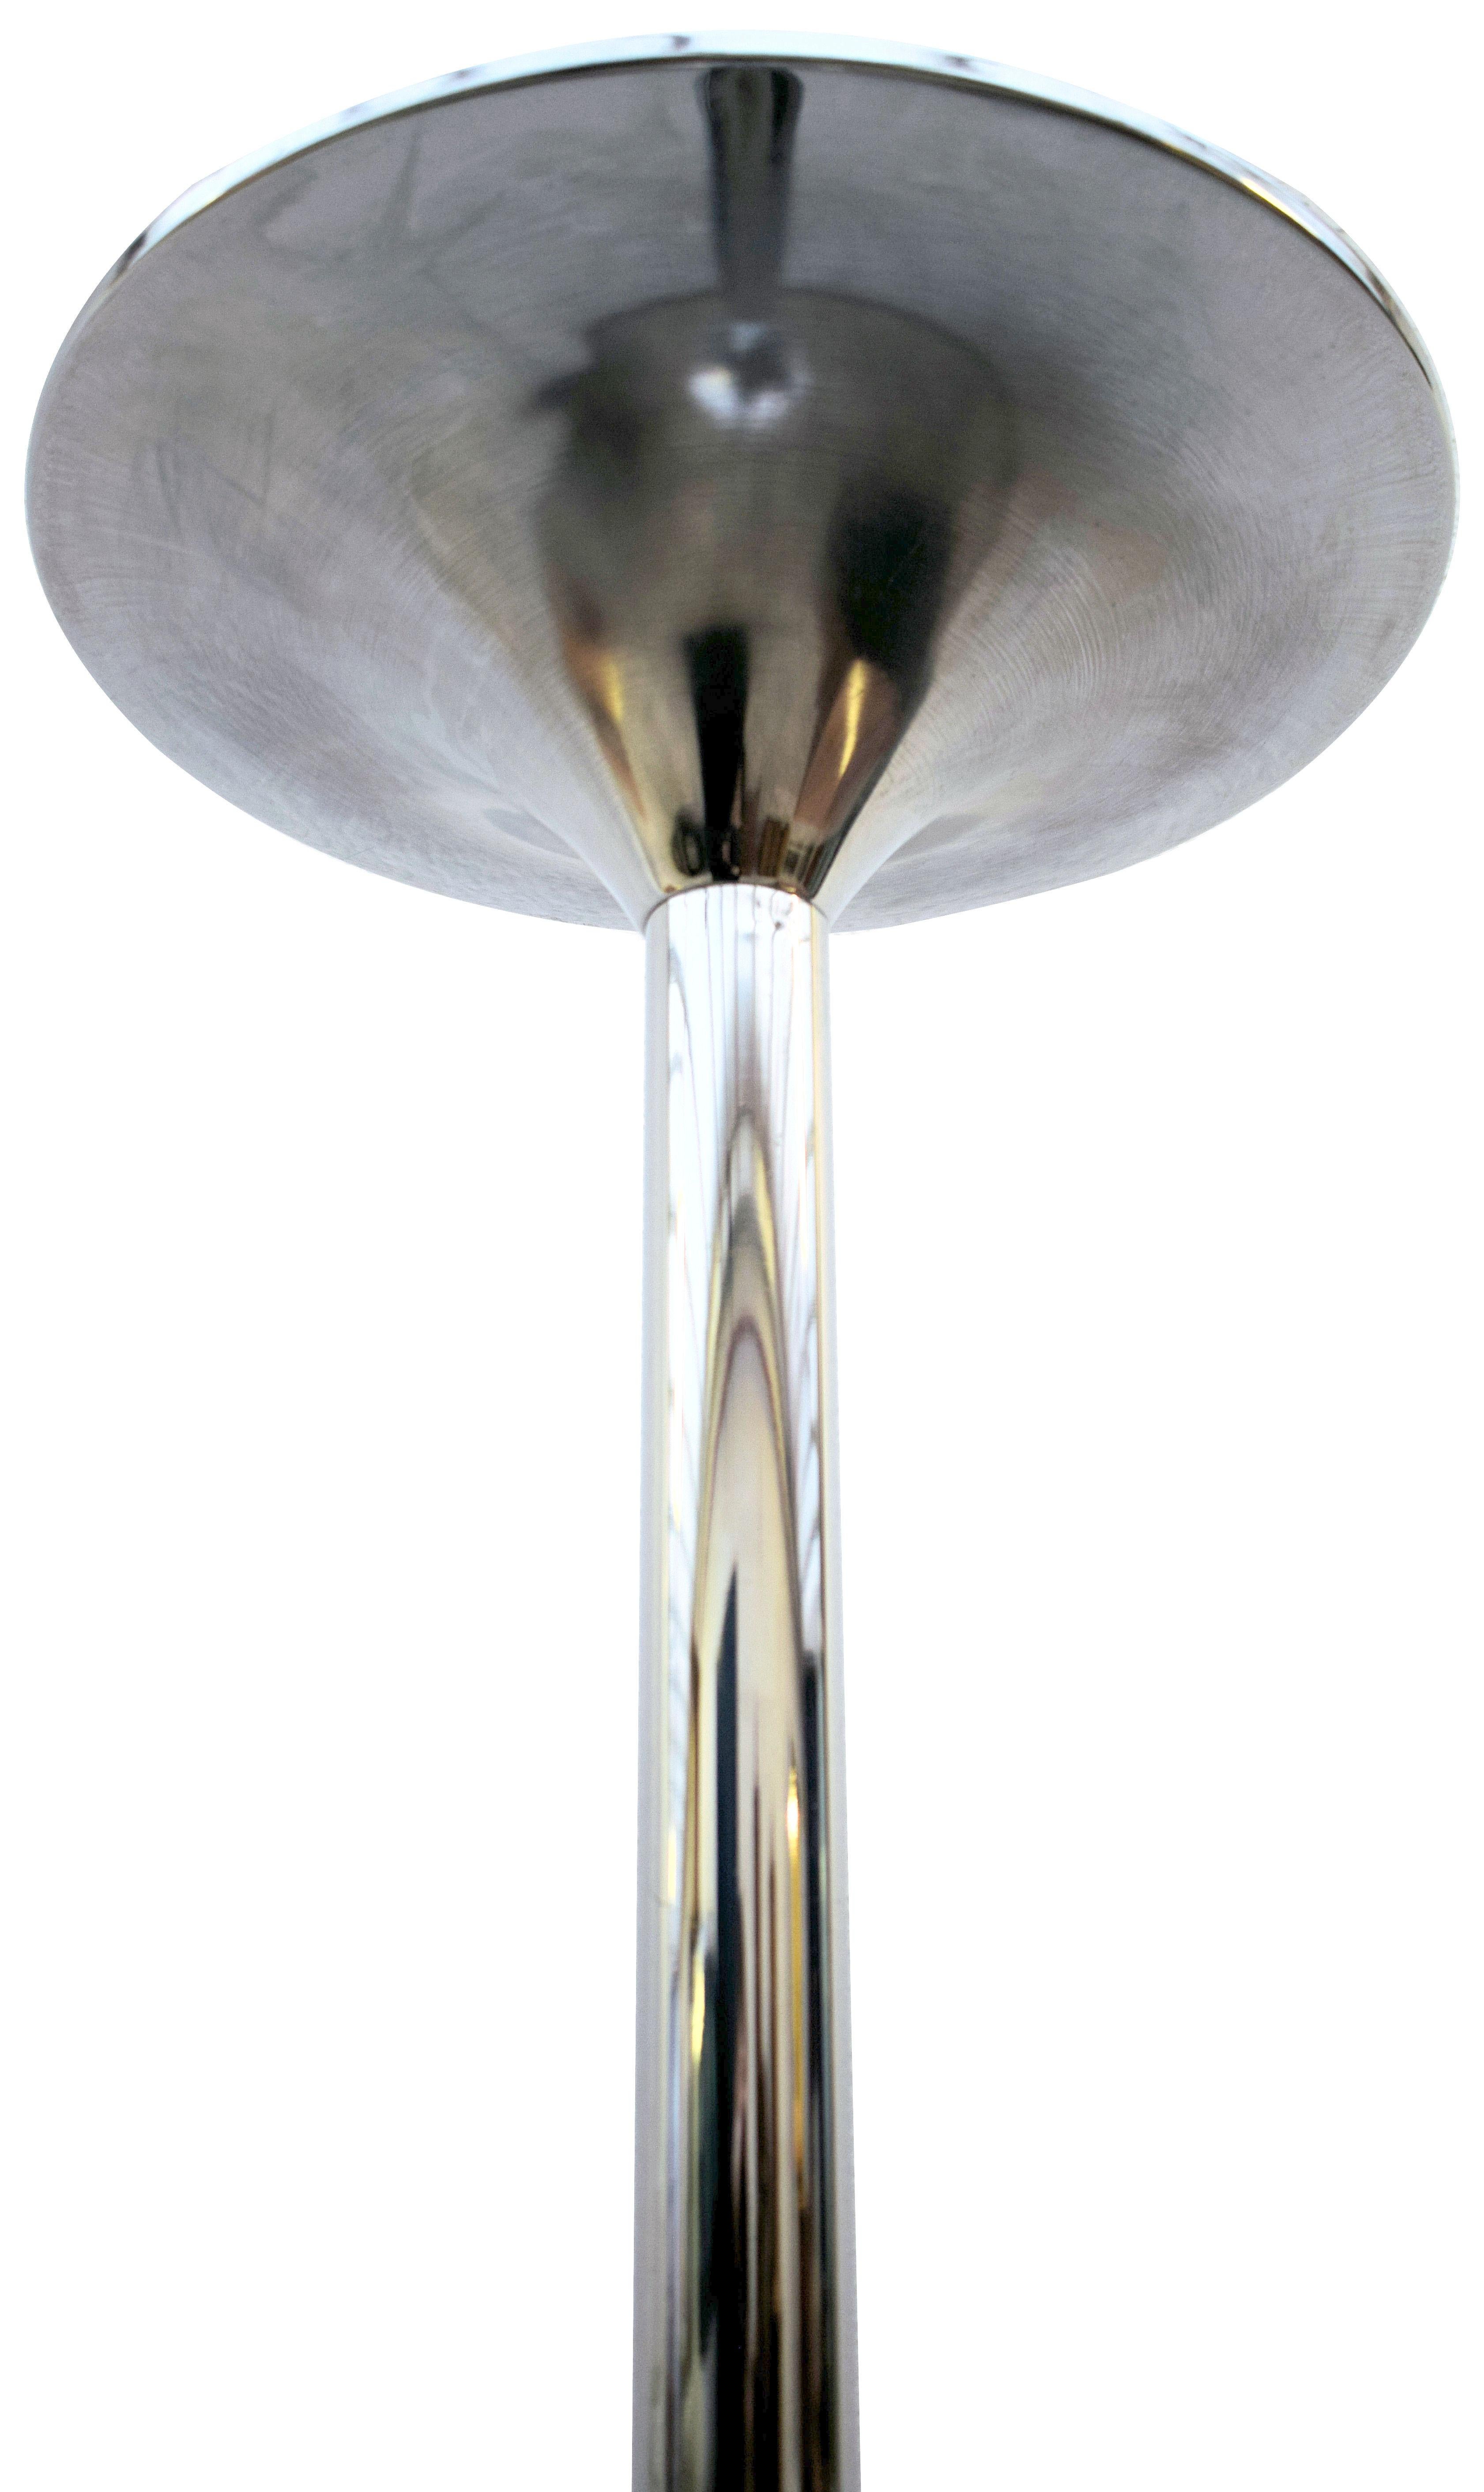 Super stylische englische Art Deco Stehlampe aus den 1930er Jahren in Chrom. Eine fabelhaft gestylte Lampe mit einer trompetenförmigen Chromhaube / Schirm und Sockel, der beschwert ist. Alles völlig authentisch. Diese fabelhaften Deckenstrahler